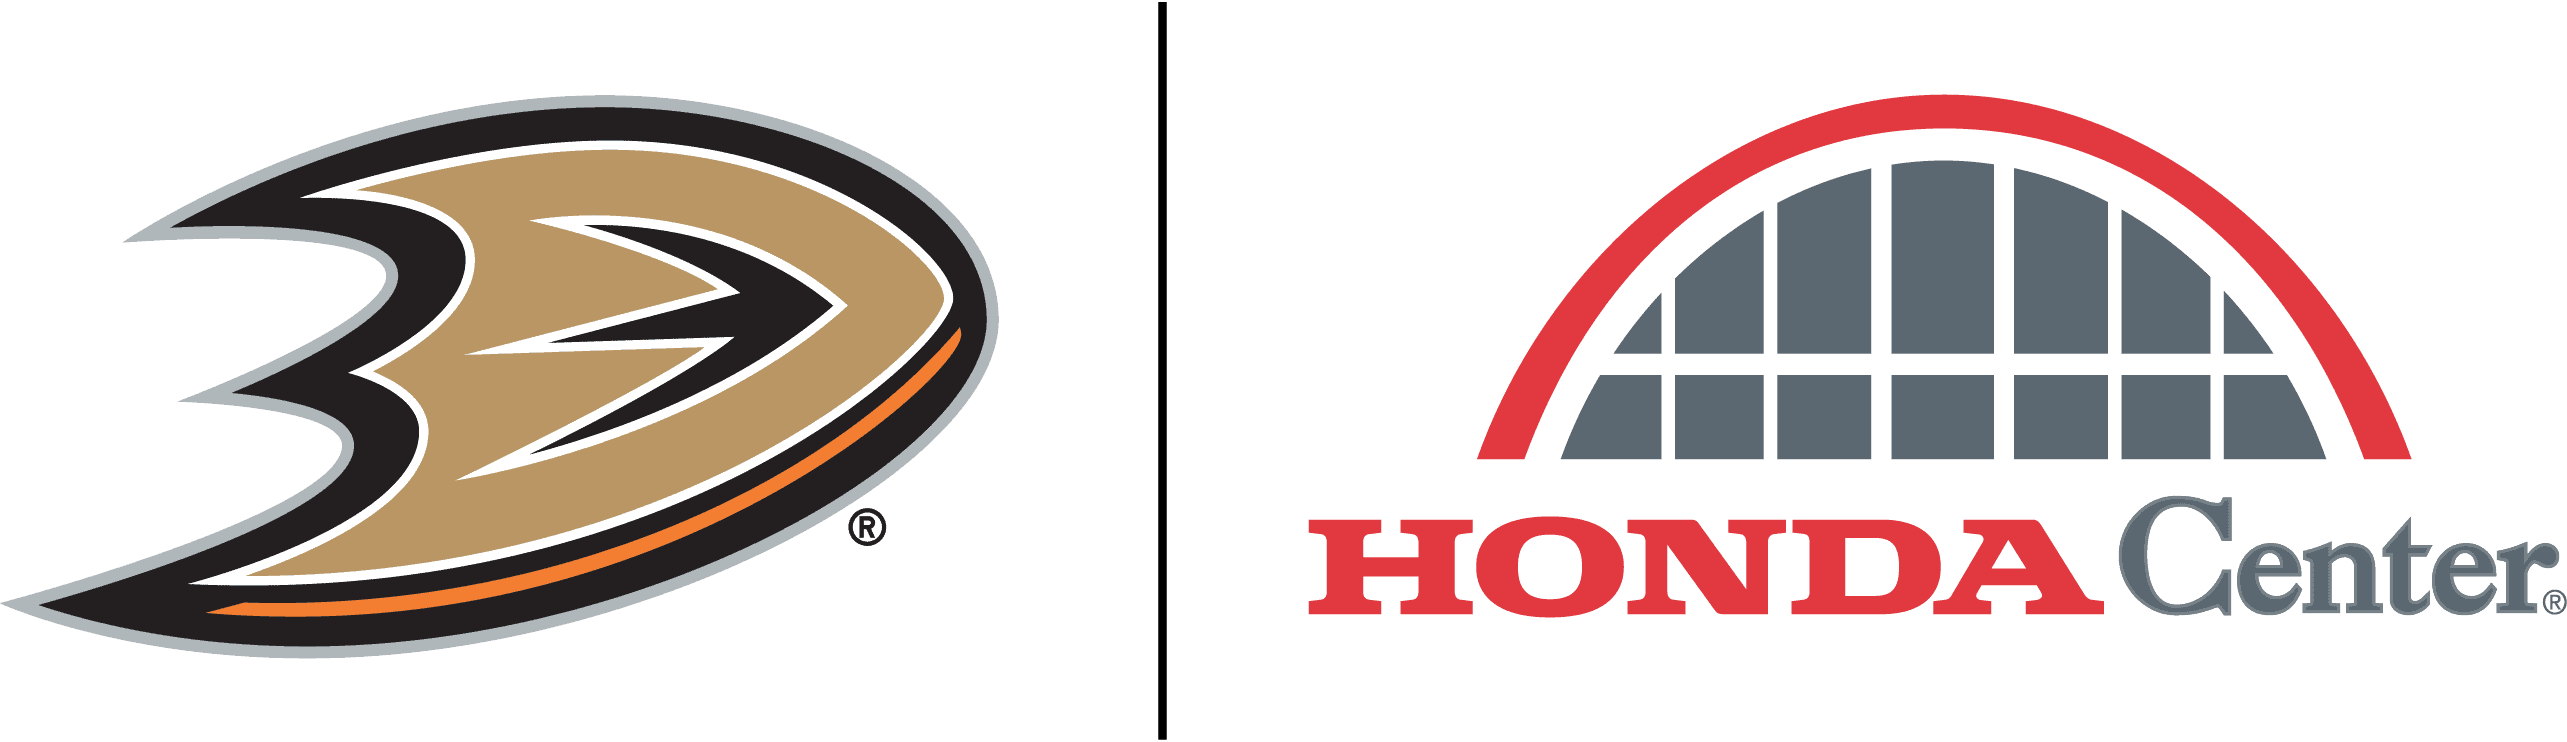 NHL logo white